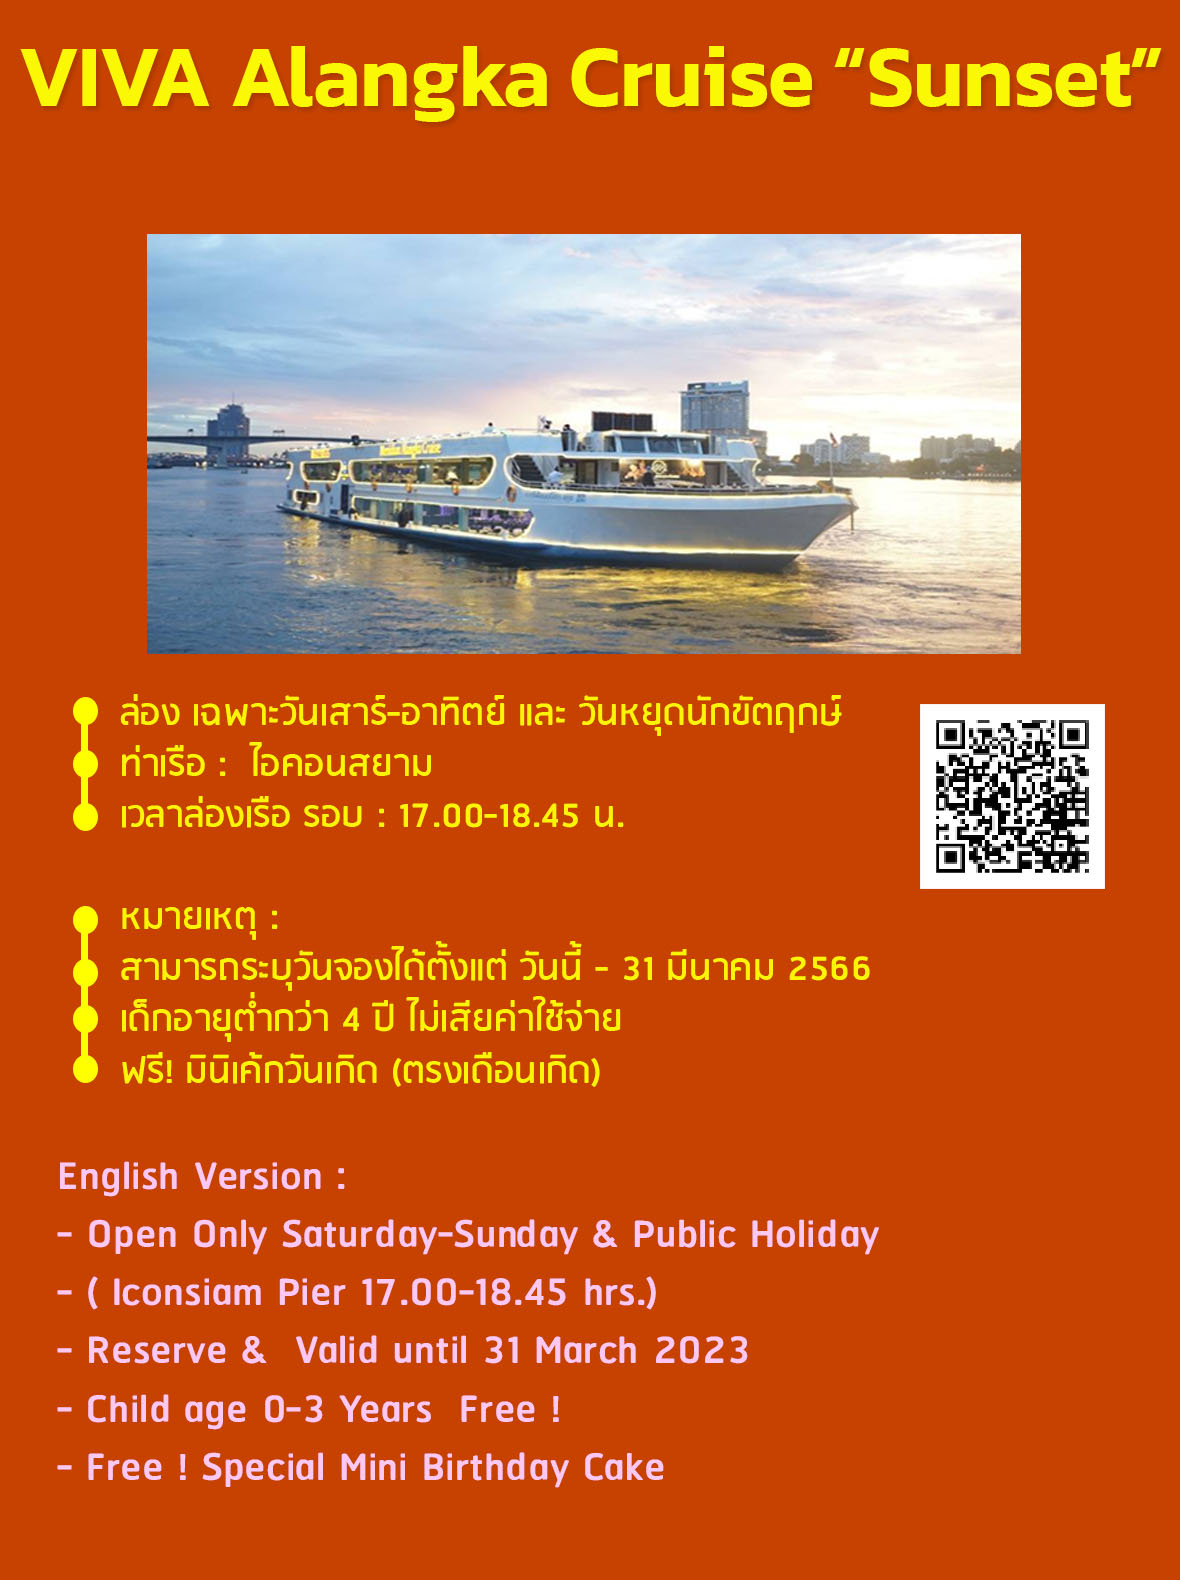 ภาพประกอบคำอธิบาย [🍺 โปร มา 4 ฟรีเบียร์ 1 เหยือก] -- S -- ล่องเรือ บุฟเฟ่ต์ทานอาหาร Viva Alangka Cruise B ล่องเรือสำราญแม่น้ำเจ้าพระยา Seafood + Sashimi ซีฟู๊ด